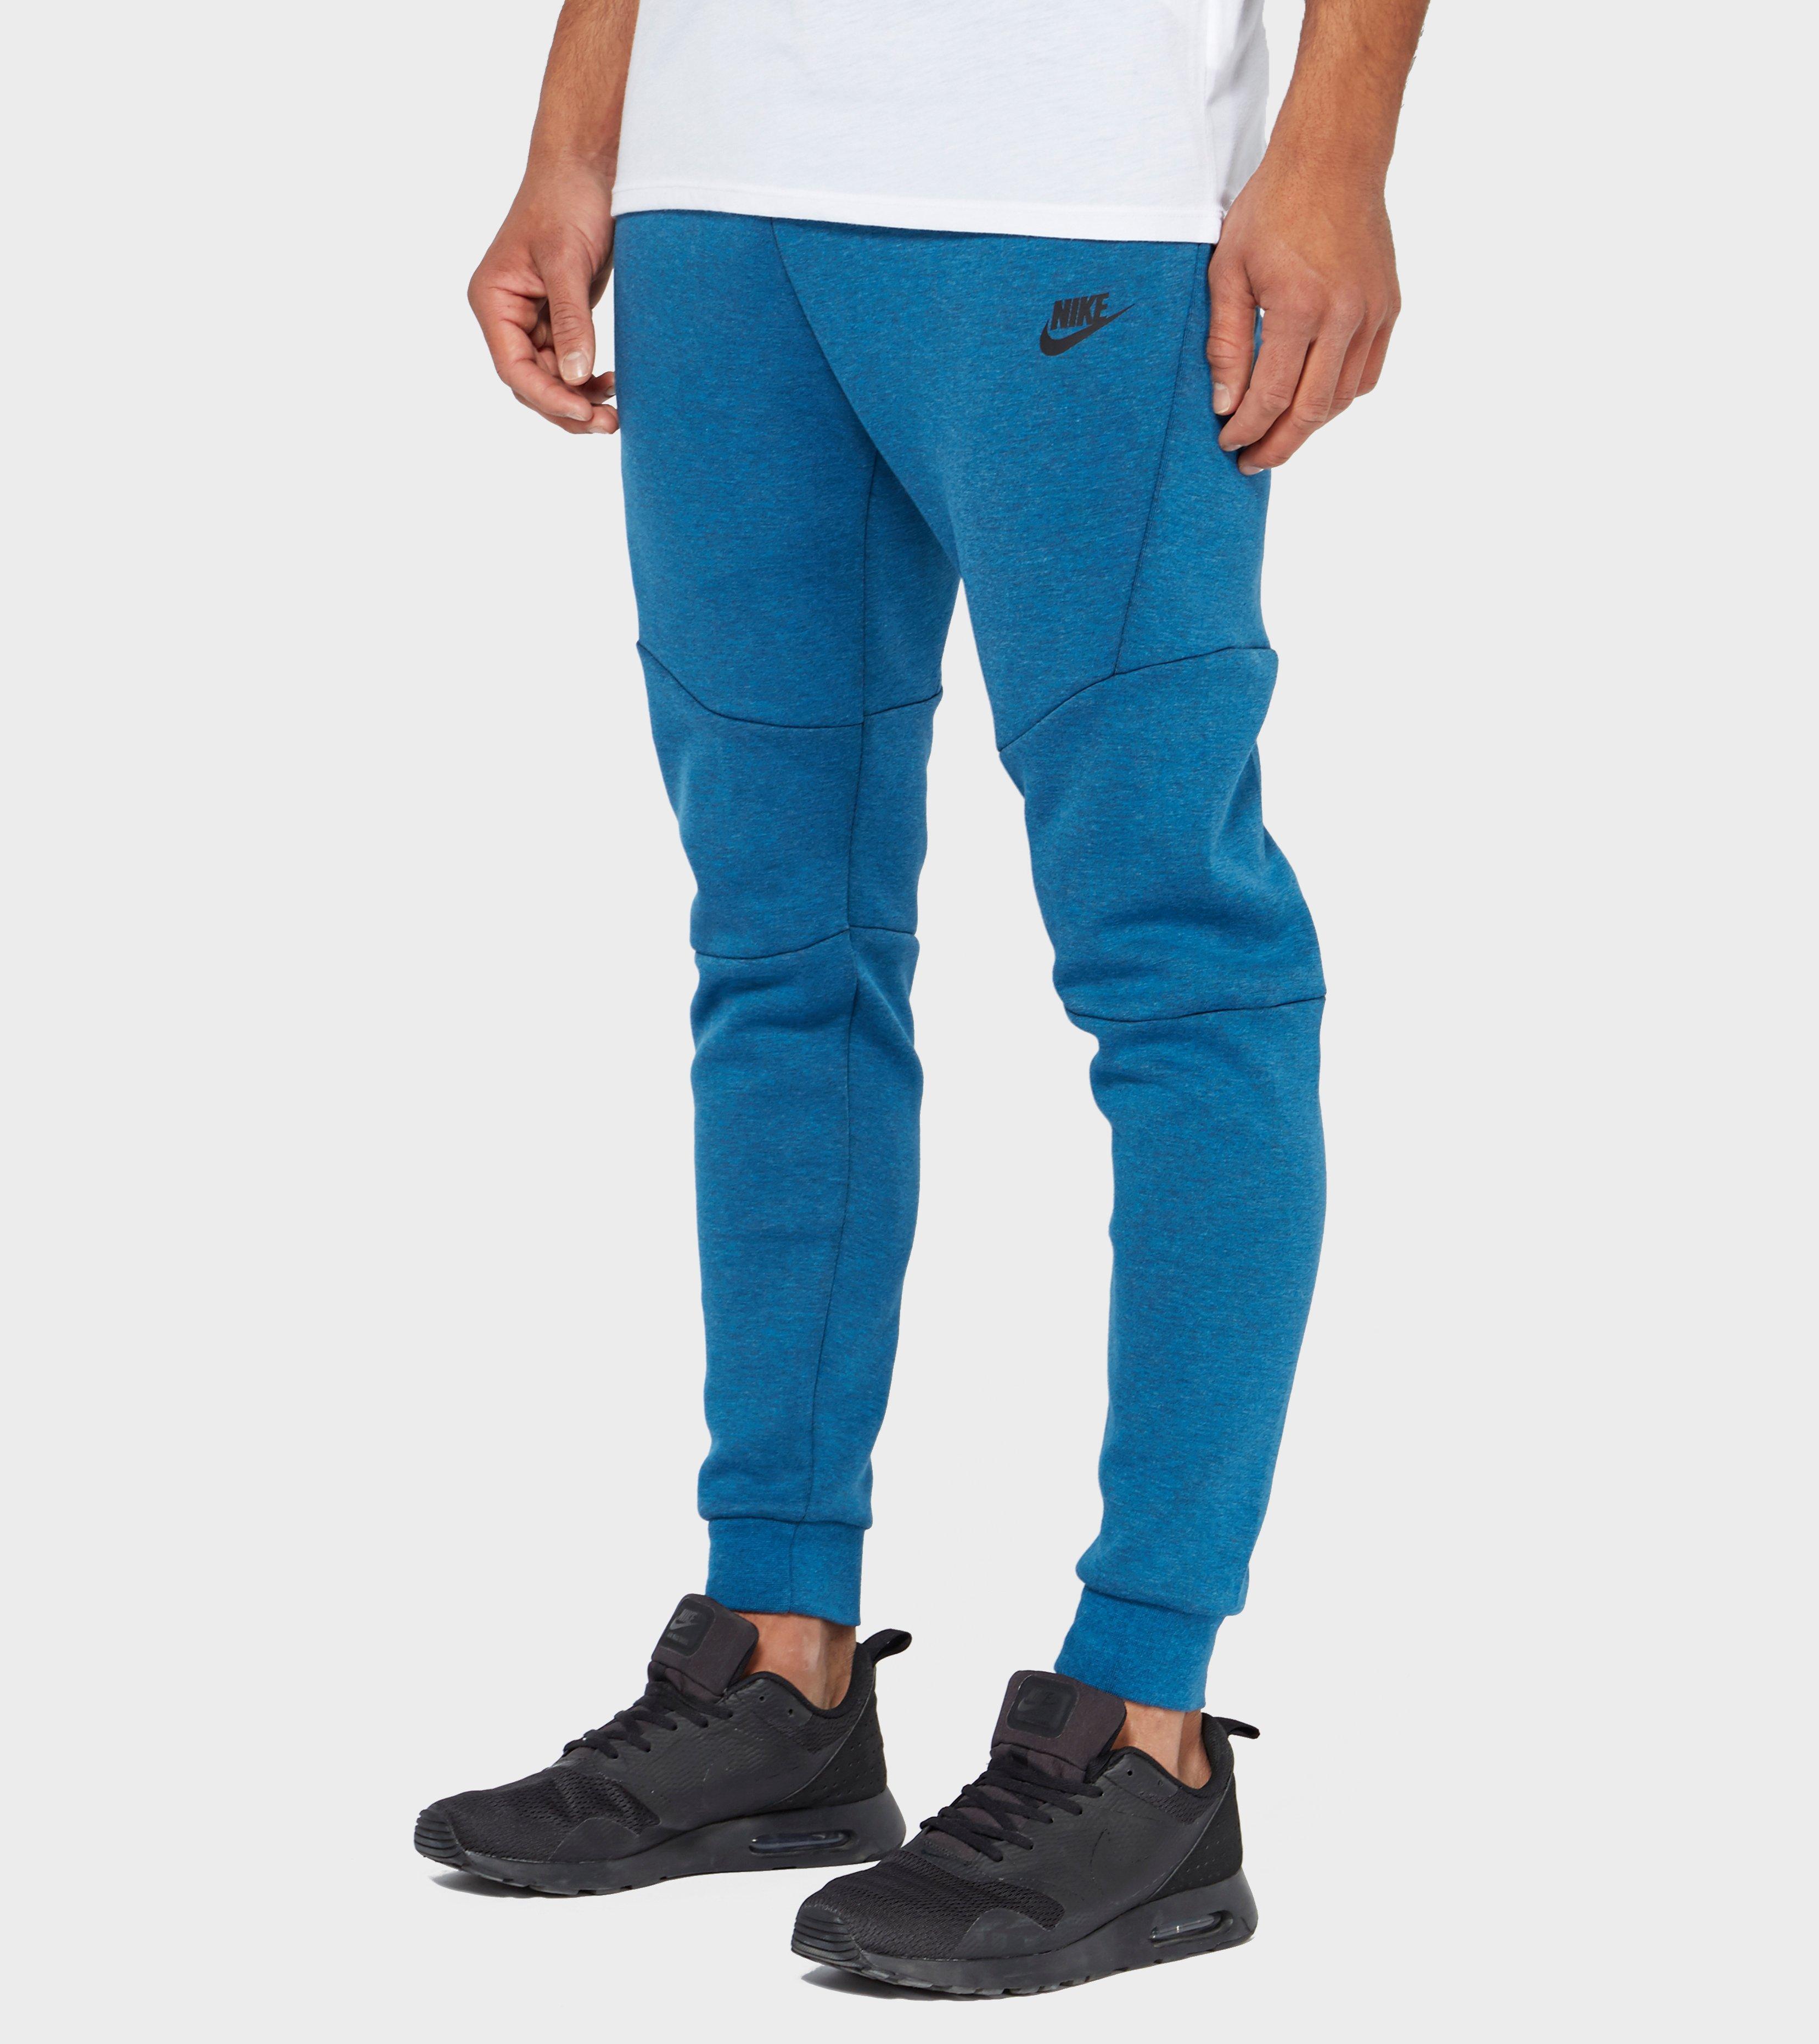 Lyst - Nike Tech Fleece Pants in Blue for Men